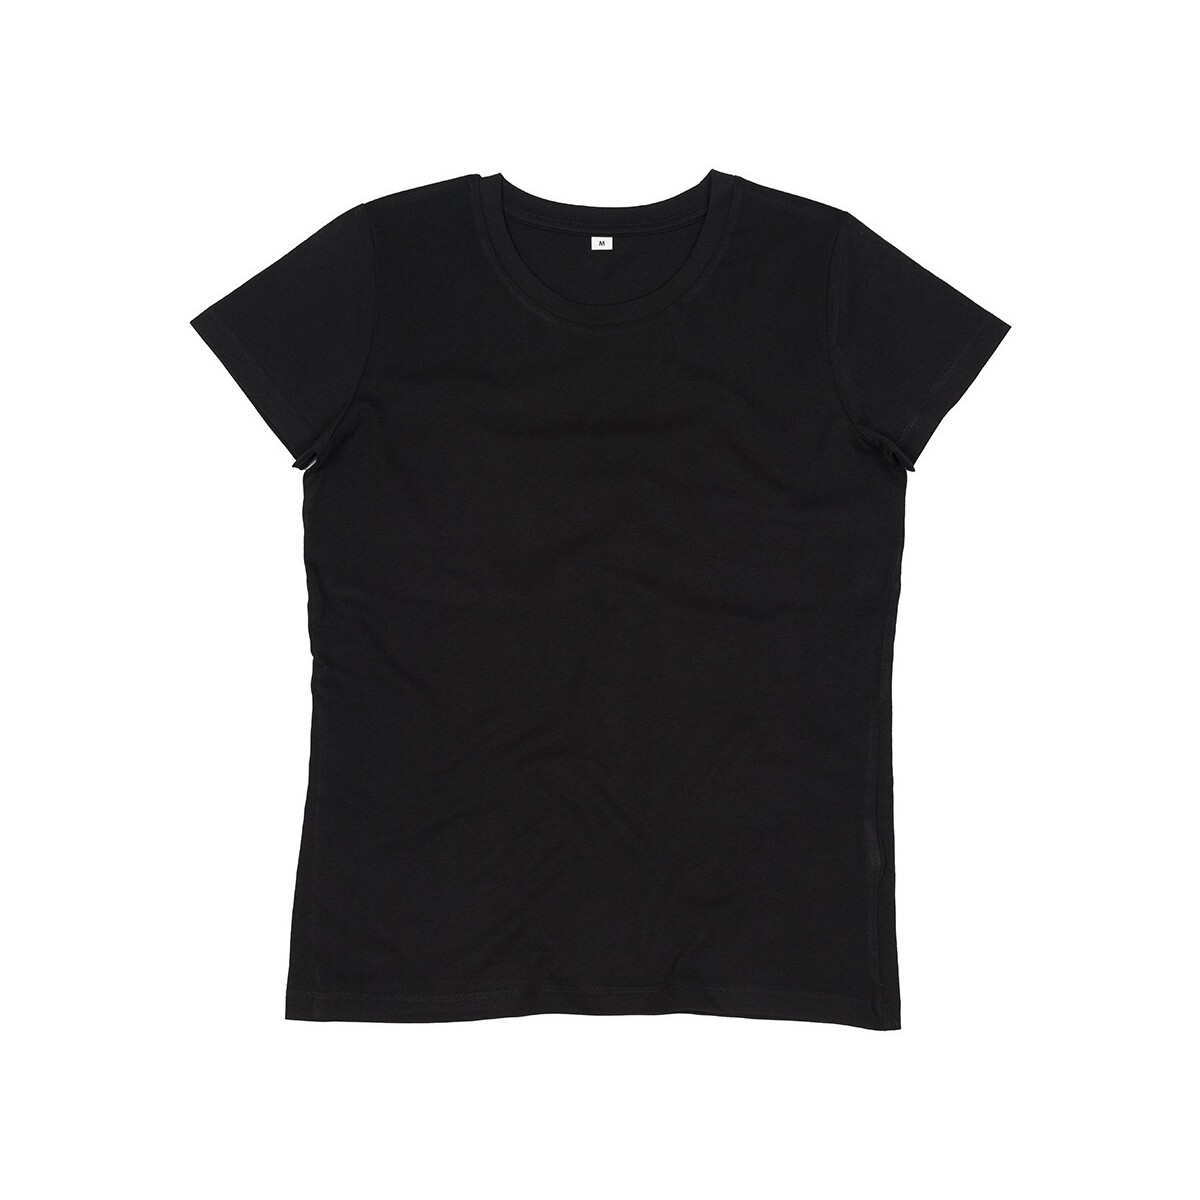 Vêtements Femme T-shirts manches longues Mantis Essential Noir